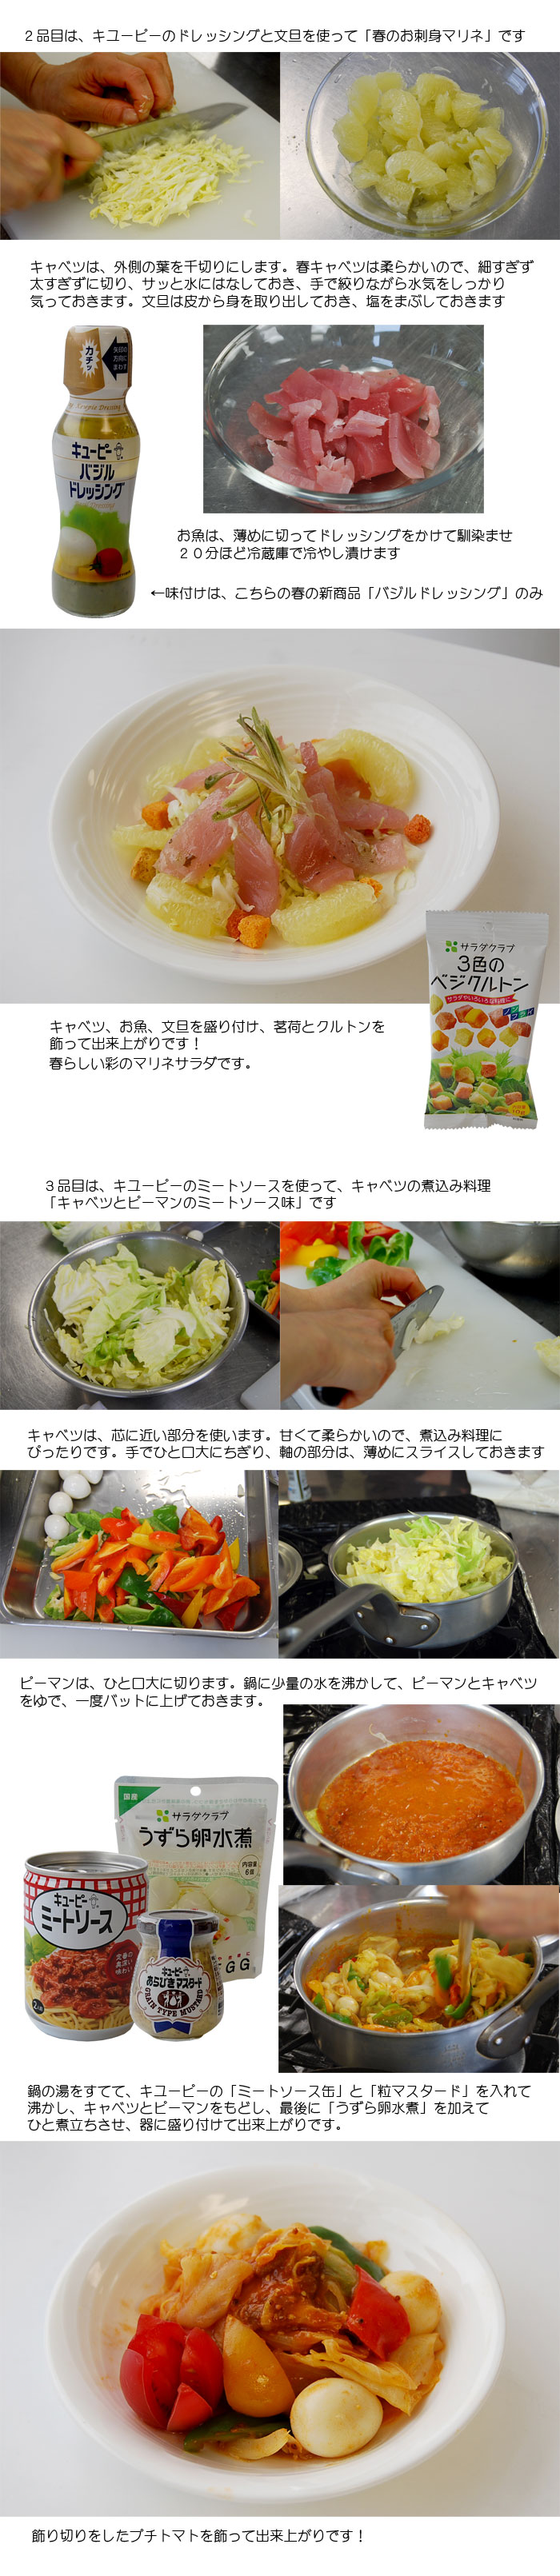 サンプラザ特別企画 第２２回 高橋 本 先生の 旬の野菜をつかった料理教室 開催いたしました 今回のテーマは キユーピー協賛 春キャベツ です 株式会社サンプラザ ホームページ